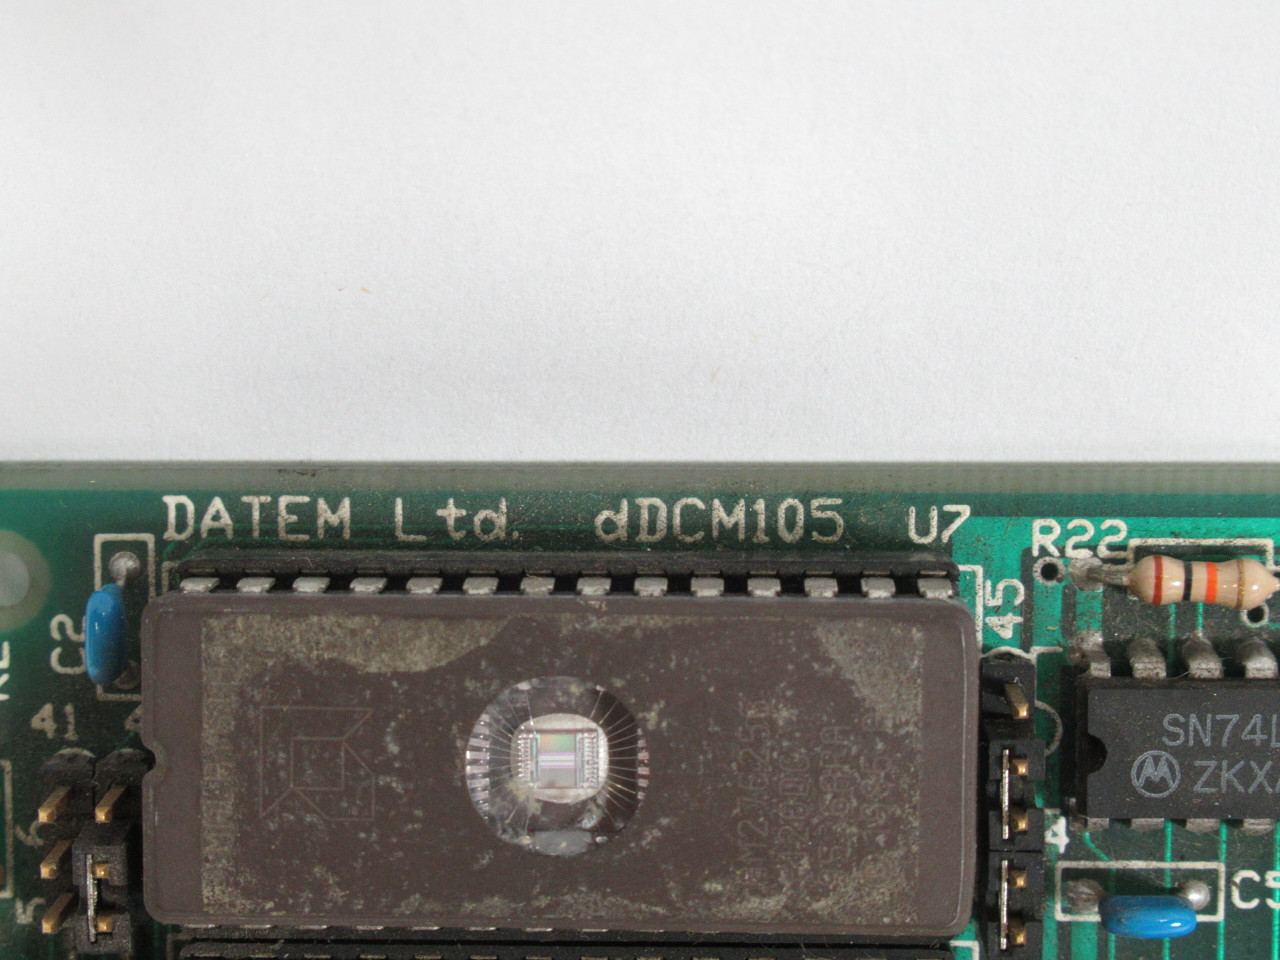 Datem DDCM105 Rev.C PC Control Board USED